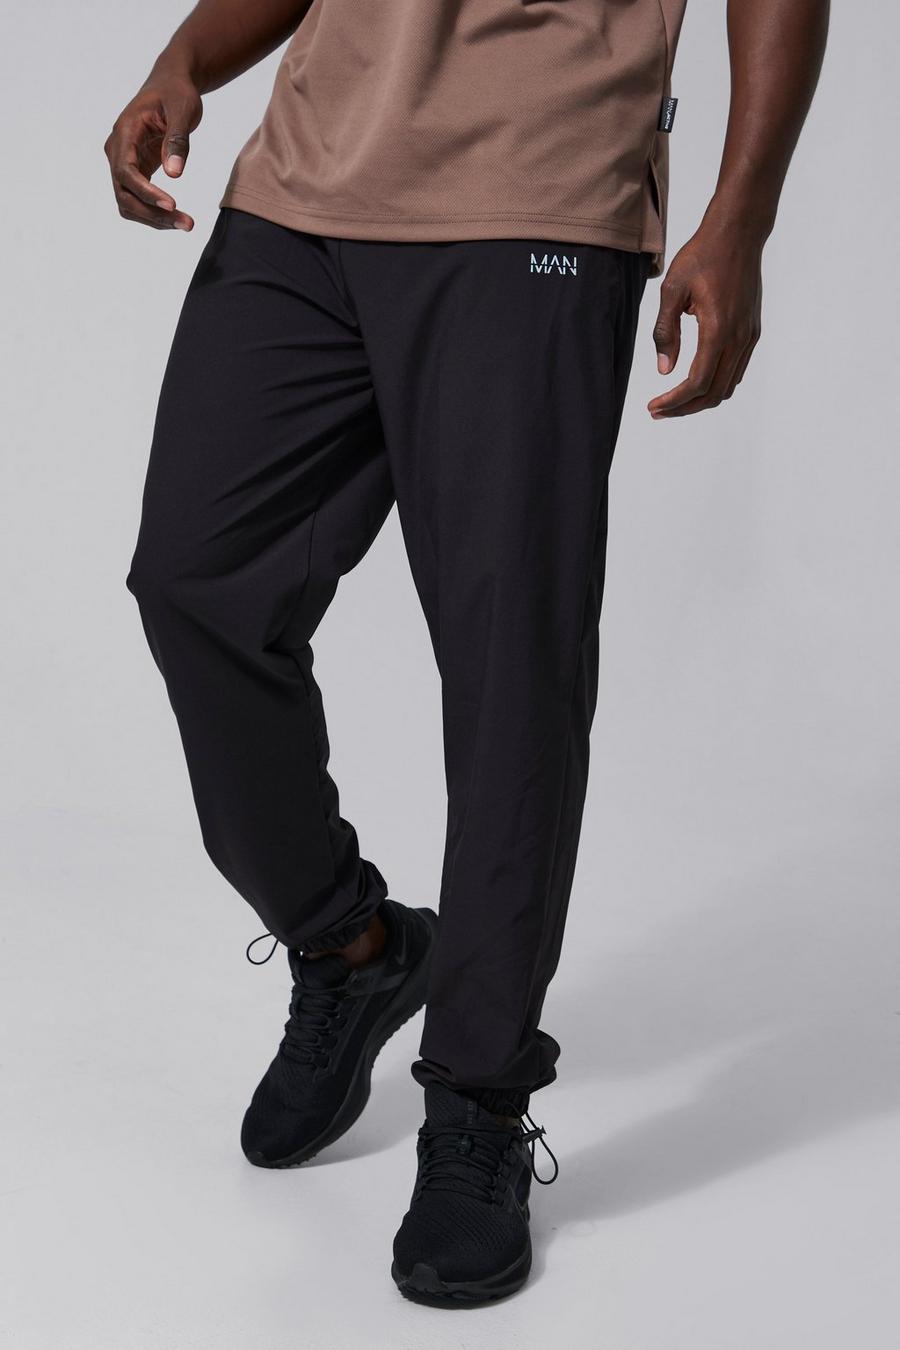 שחור מכנסי טרנינג ספורטיביים עם שרוך בנג'י במכפלת וכיתוב Man, לגברים גבוהים image number 1